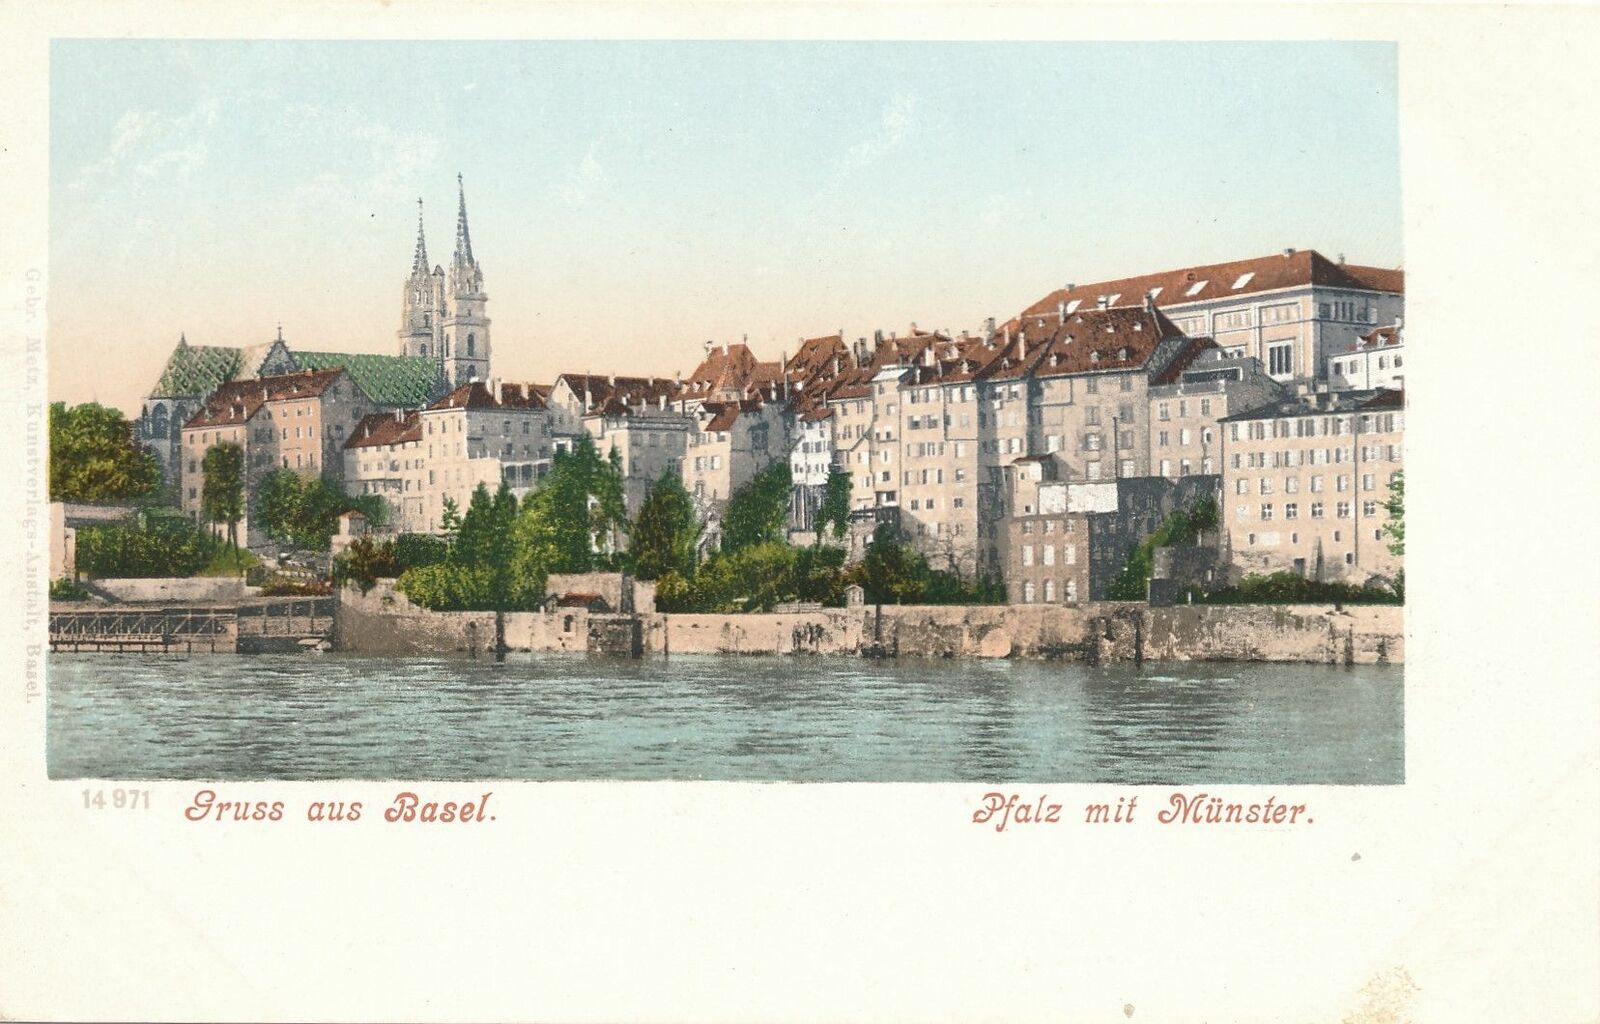 BASEL - Pfalz mit Munster Gruss Aus Basel - Switzerland - udb (pre 1908)